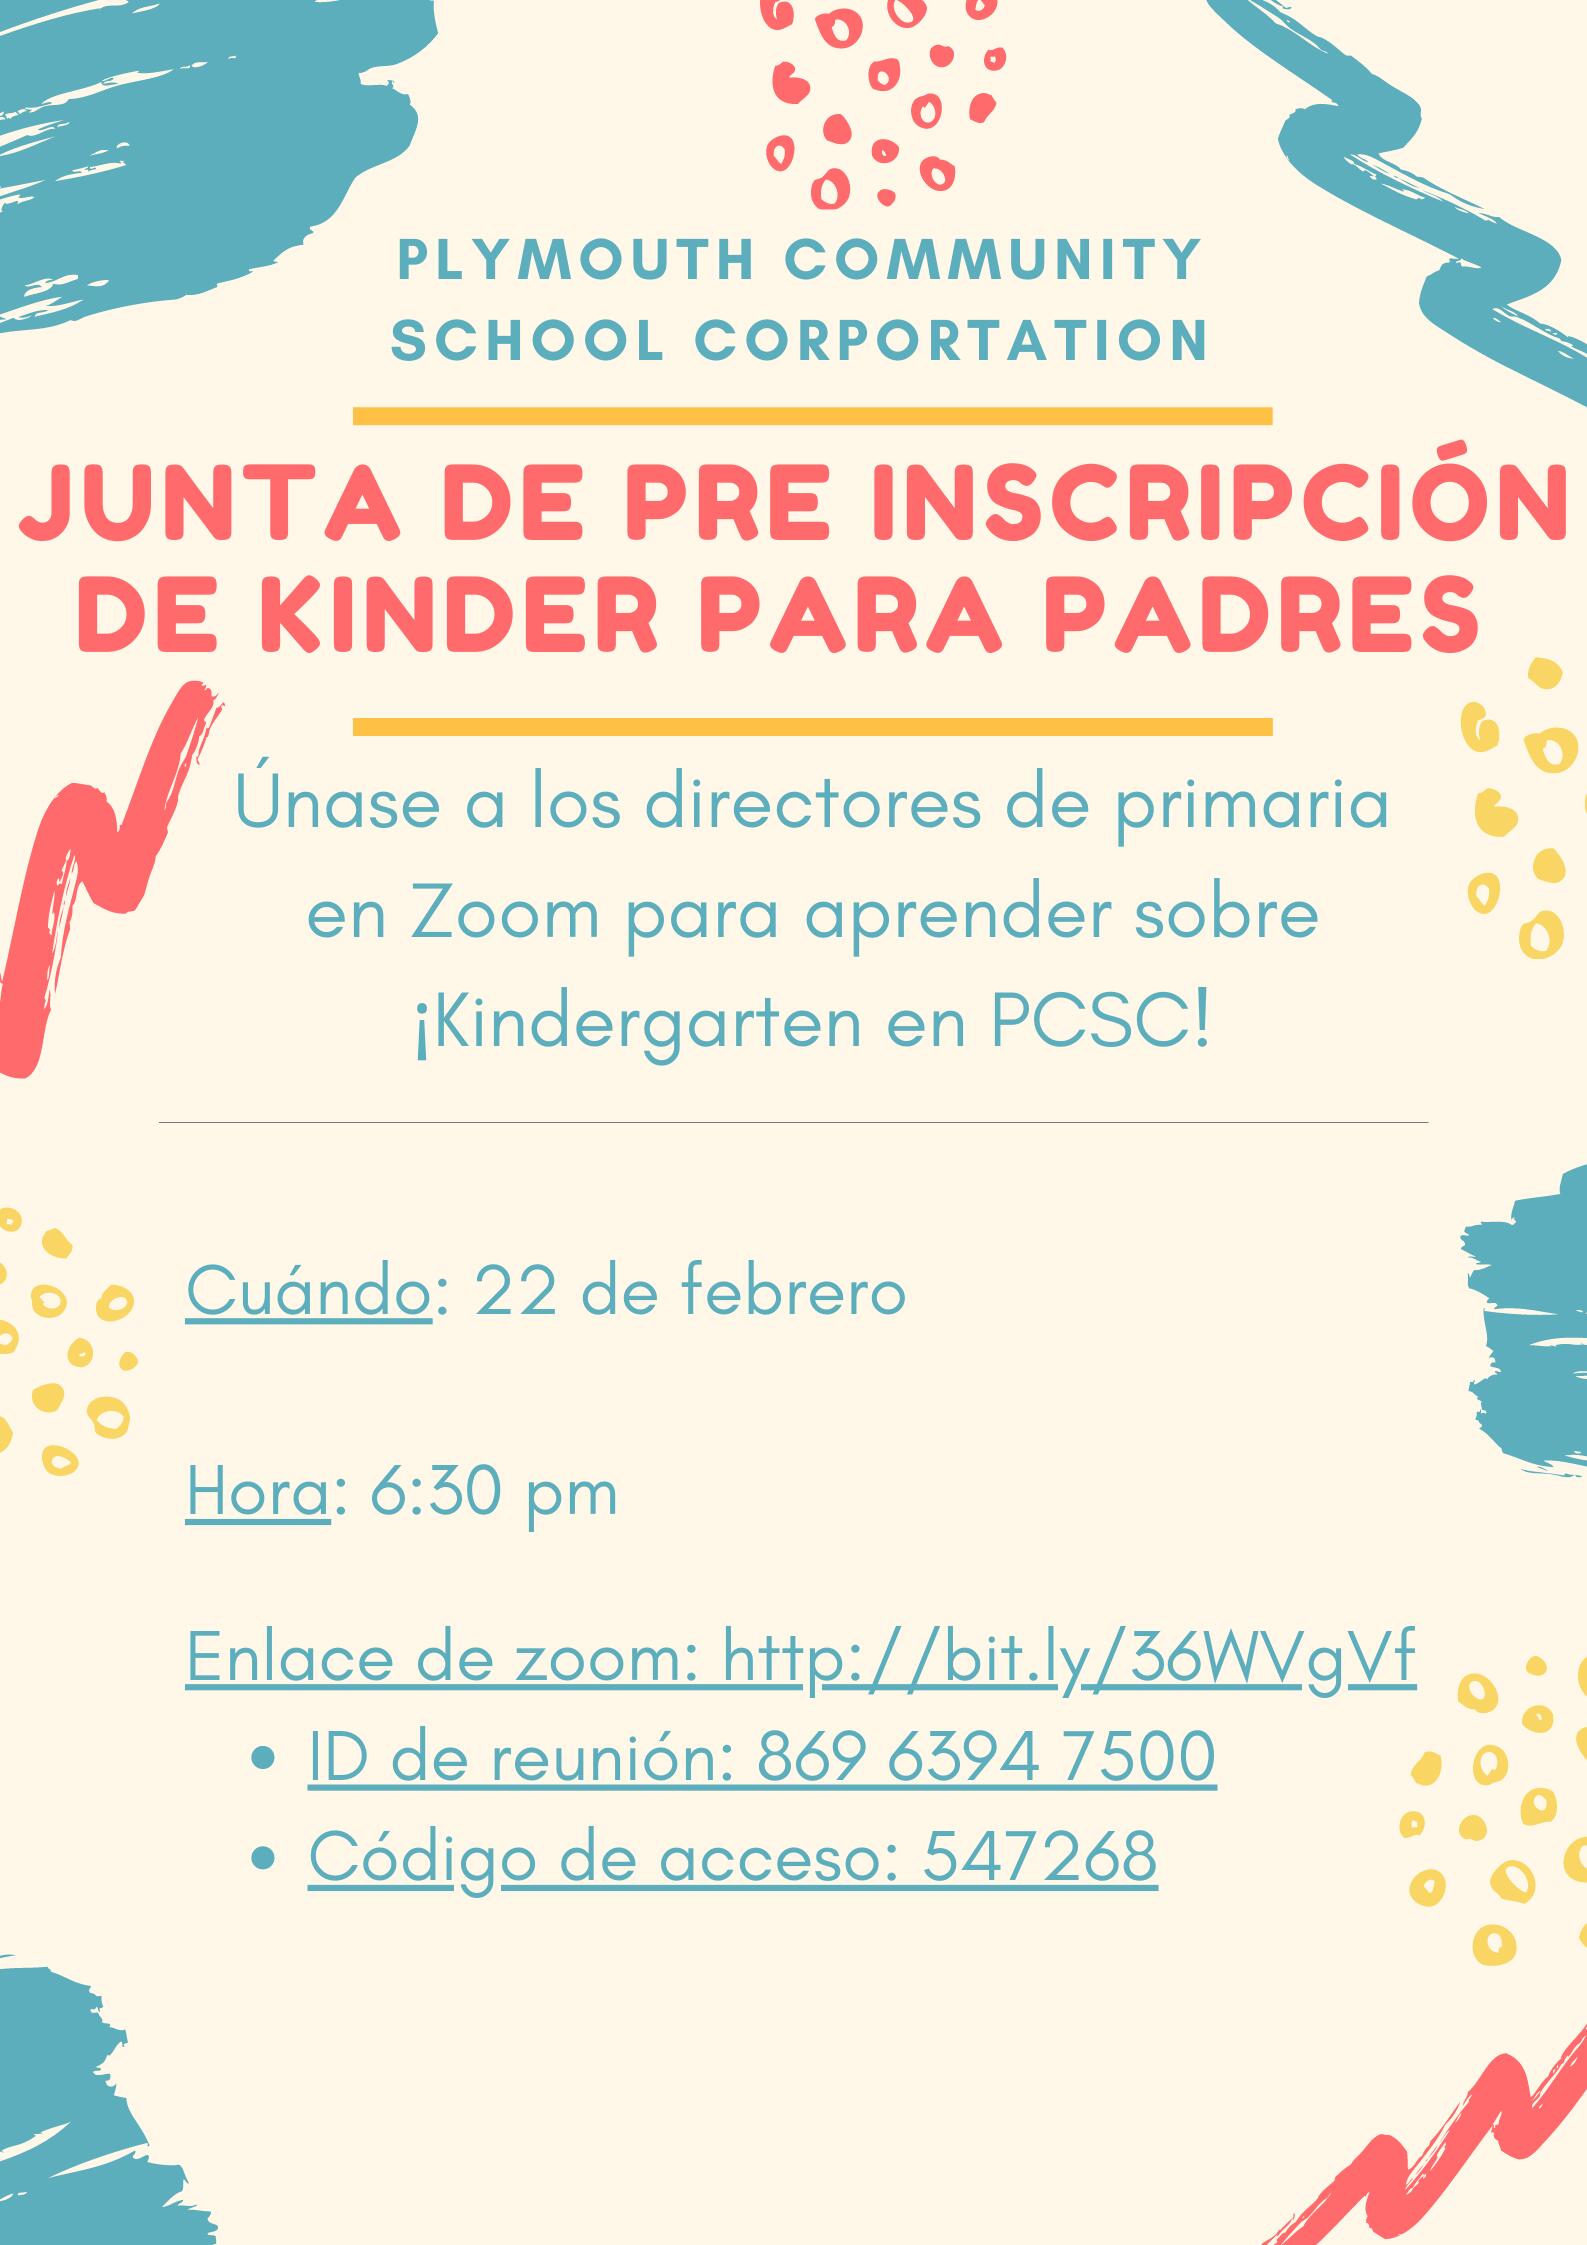  ¡Únase a nosotros en Zoom para una reunión informativa sobre PCSC Kindergarten el próximo año escolar!